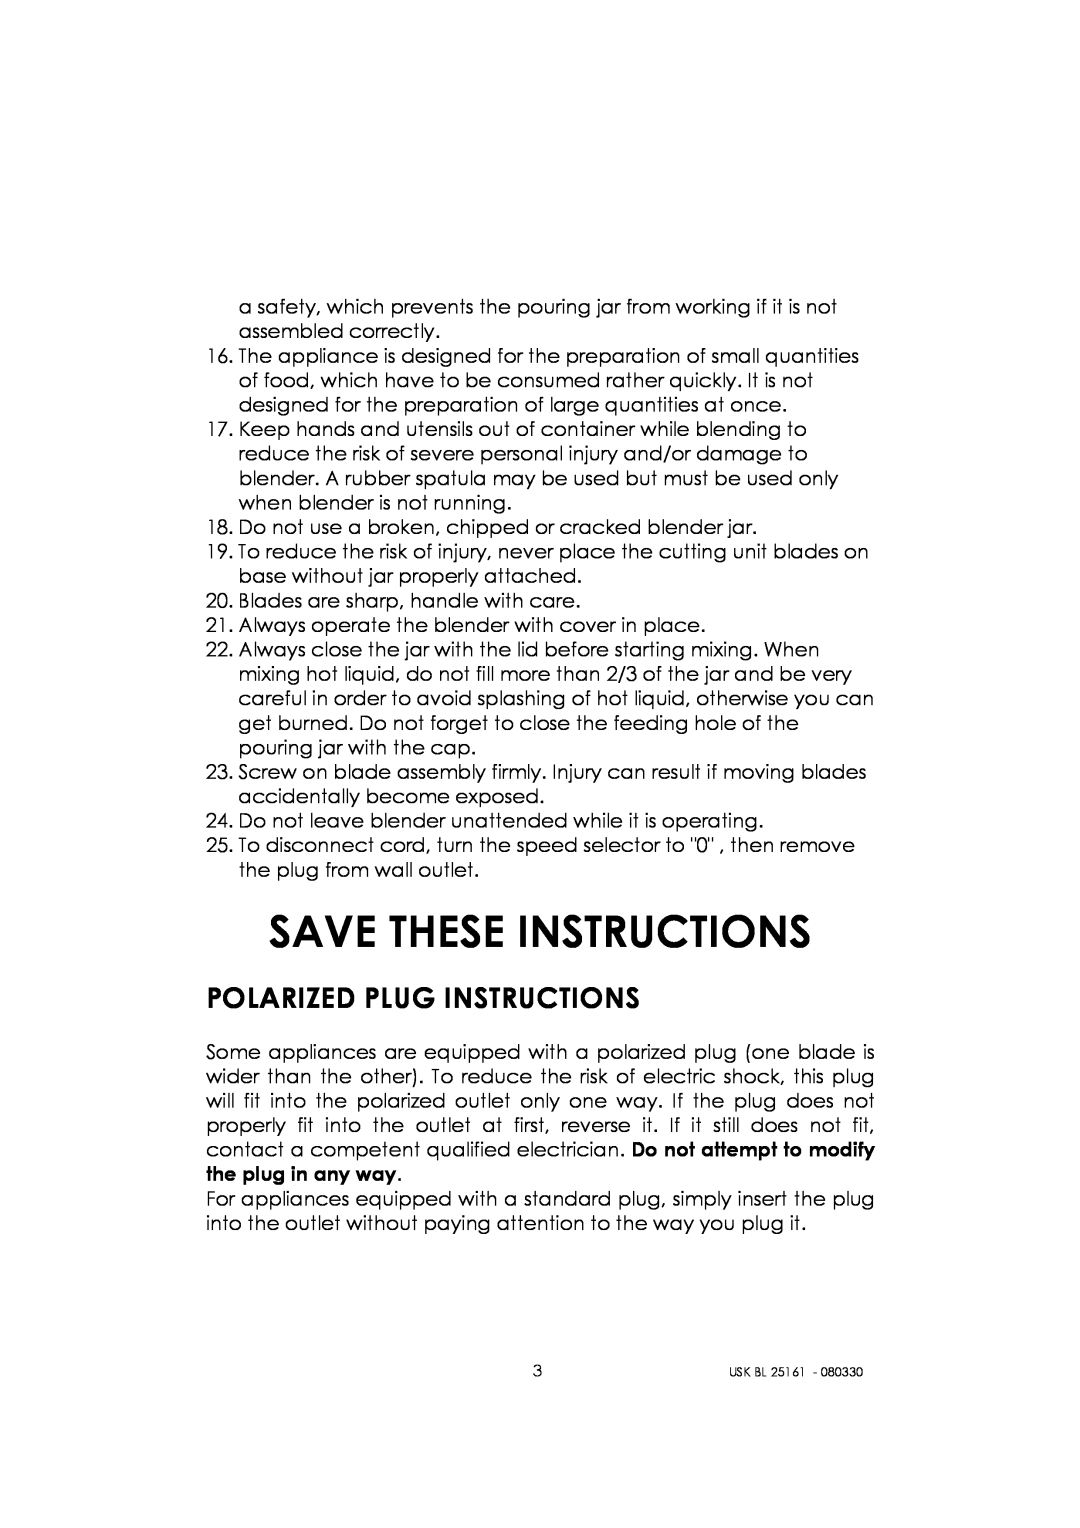 Kalorik usk bl 25161 manual Save These Instructions, Polarized Plug Instructions 